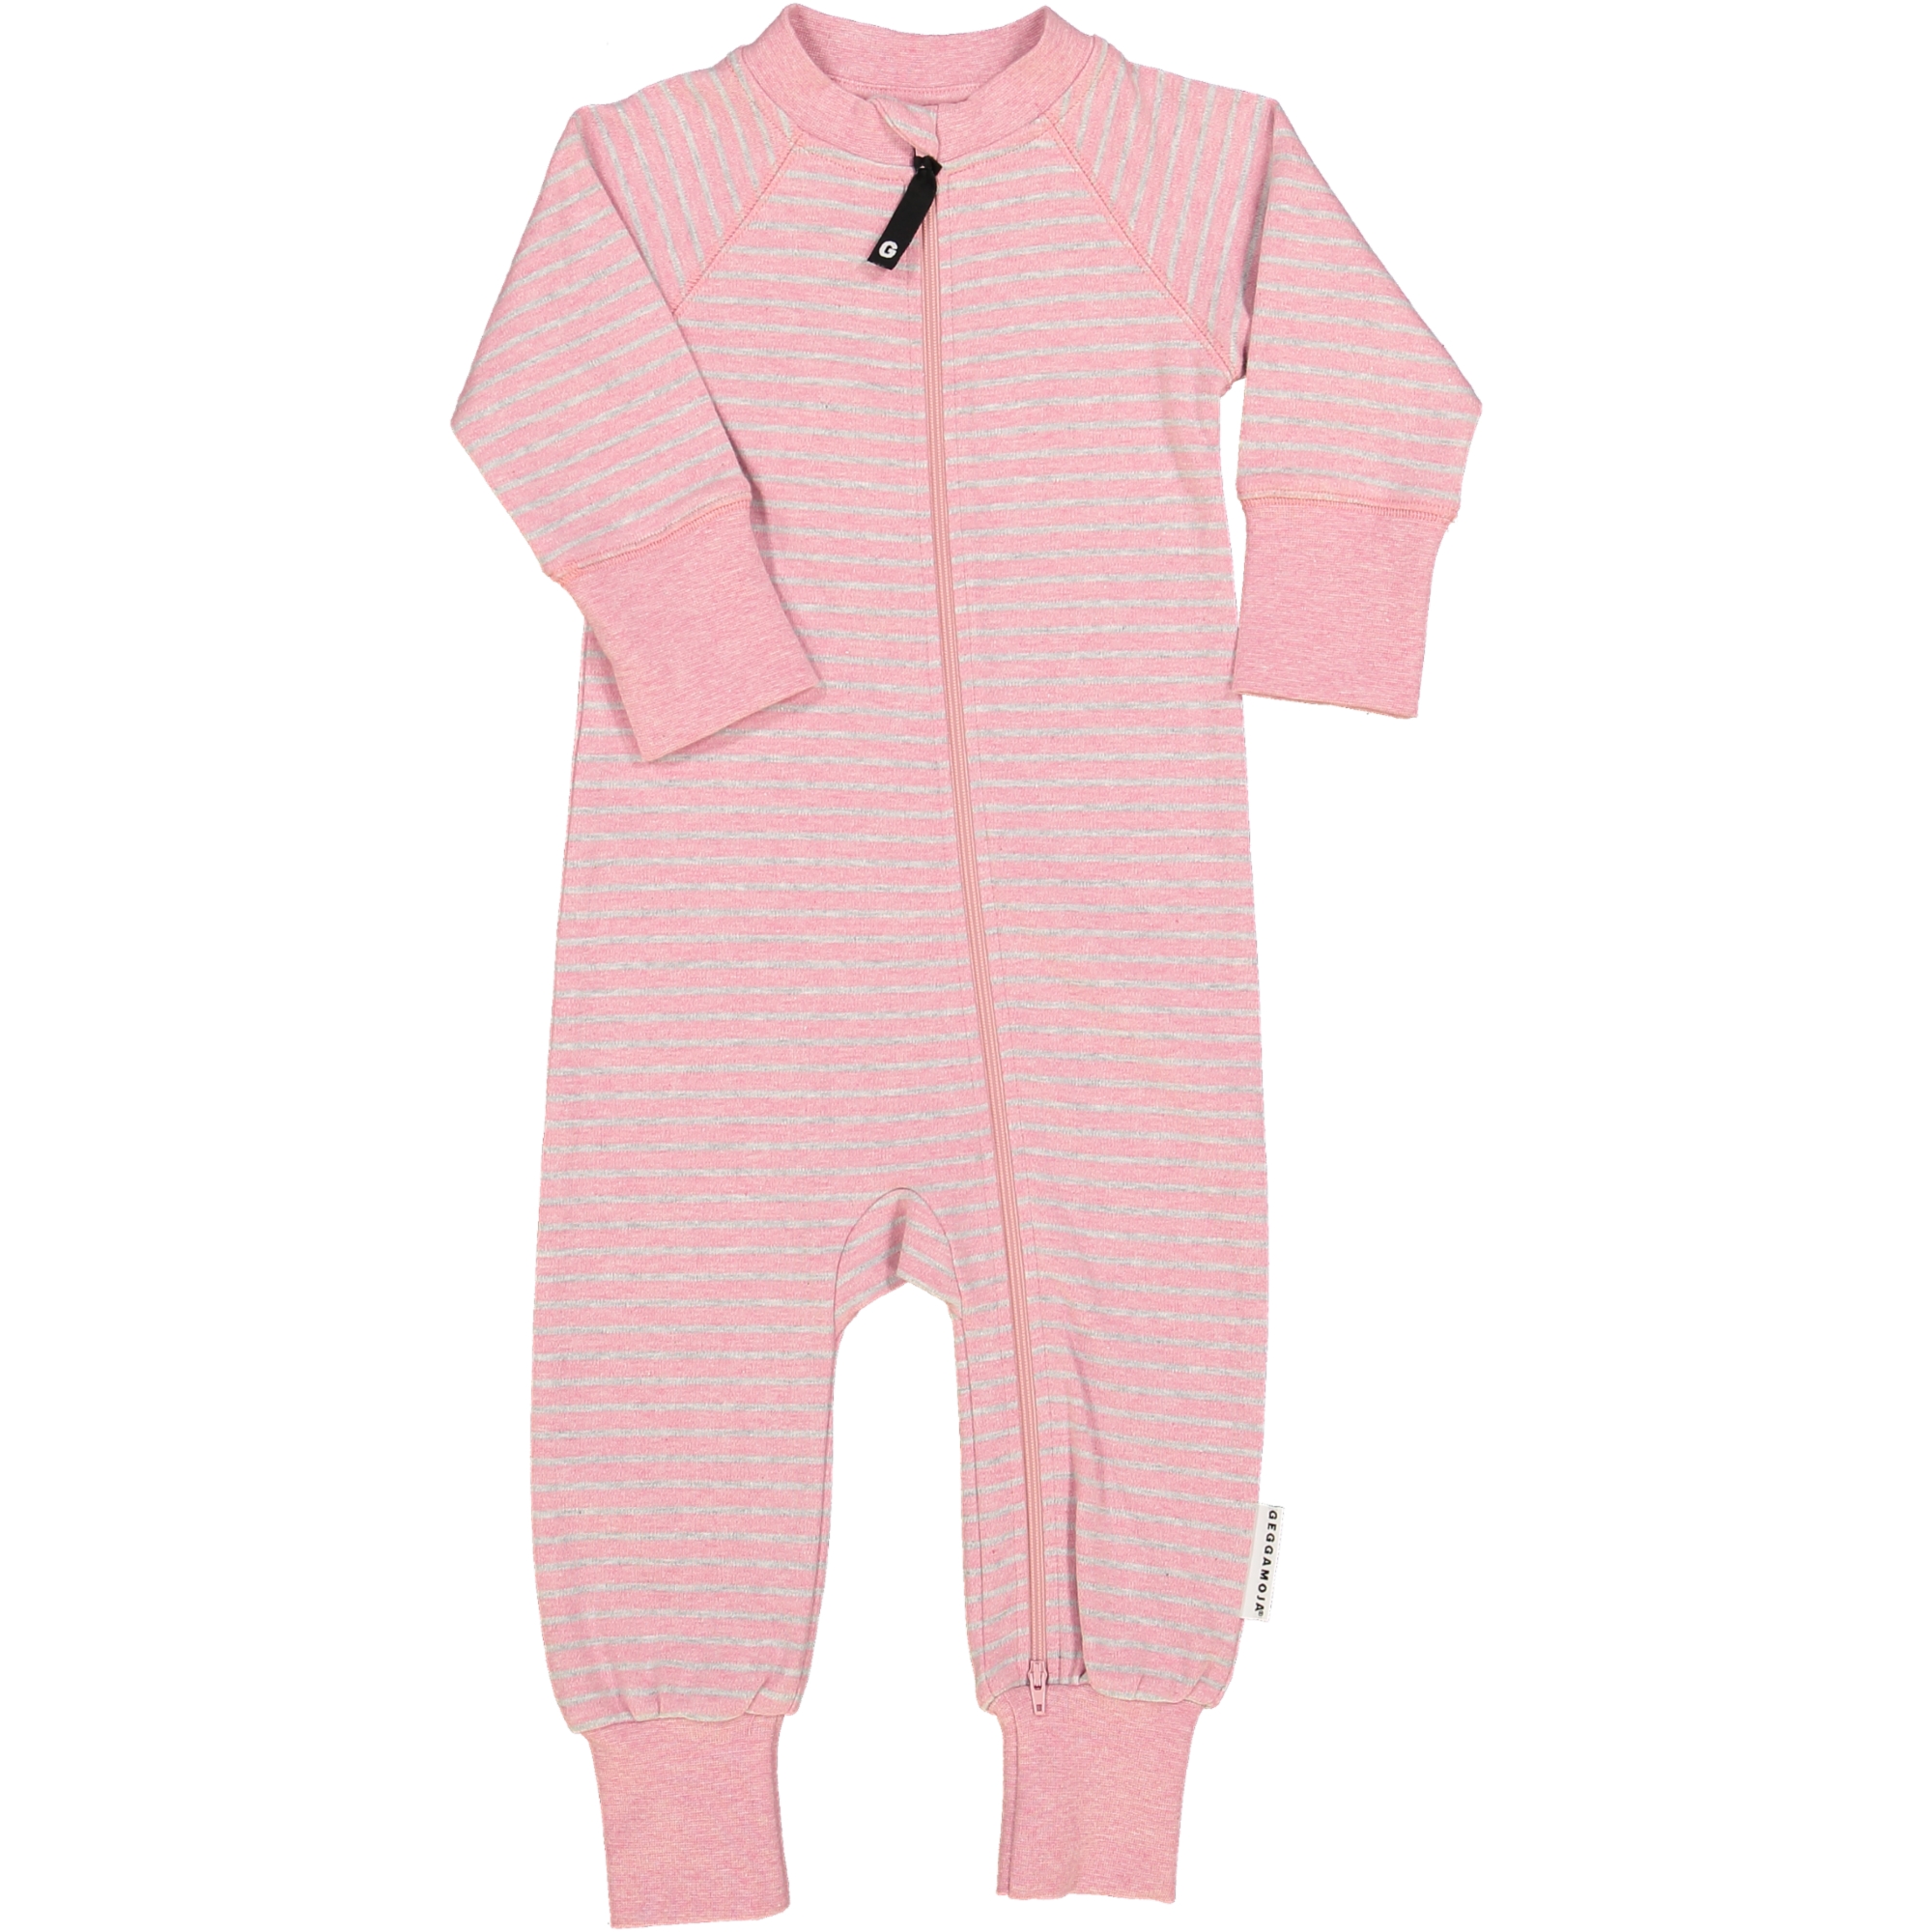 Two Way Zip Pyjamas Classic Pink Daisy Stripe 86 92